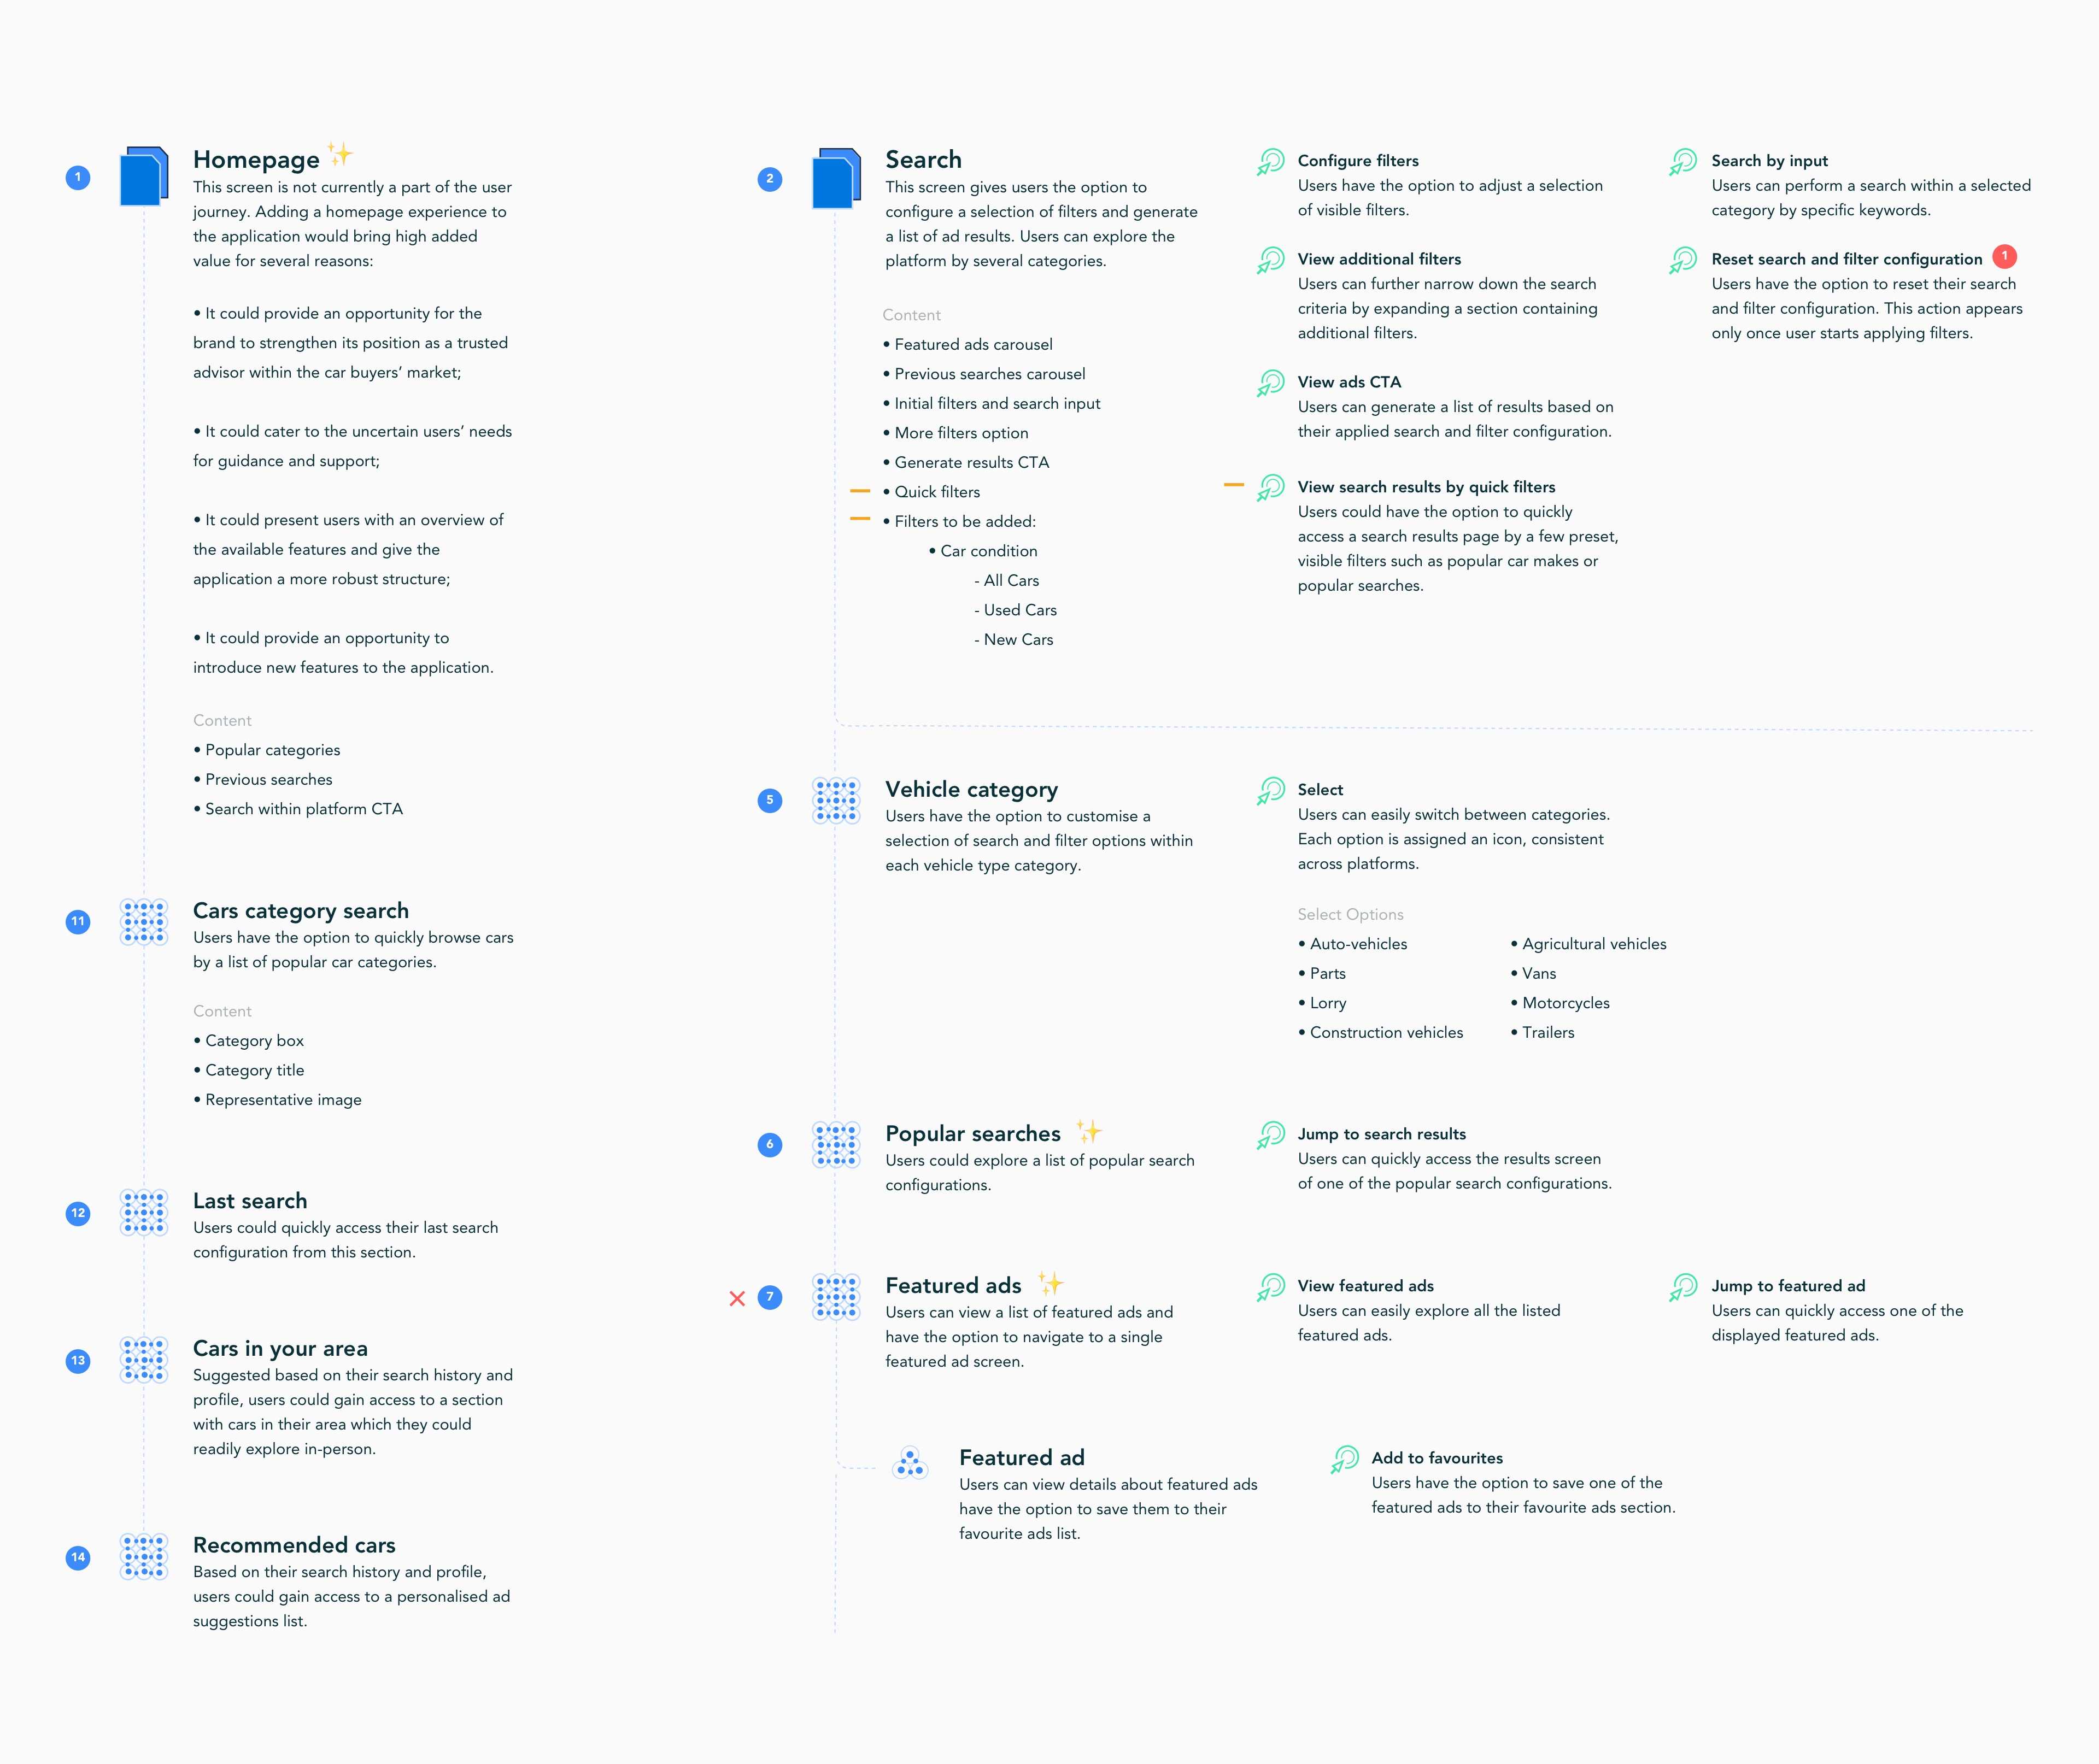 Dettaglio del diagramma di flusso dell'esperienza utente che documenta le caratteristiche e il contenuto